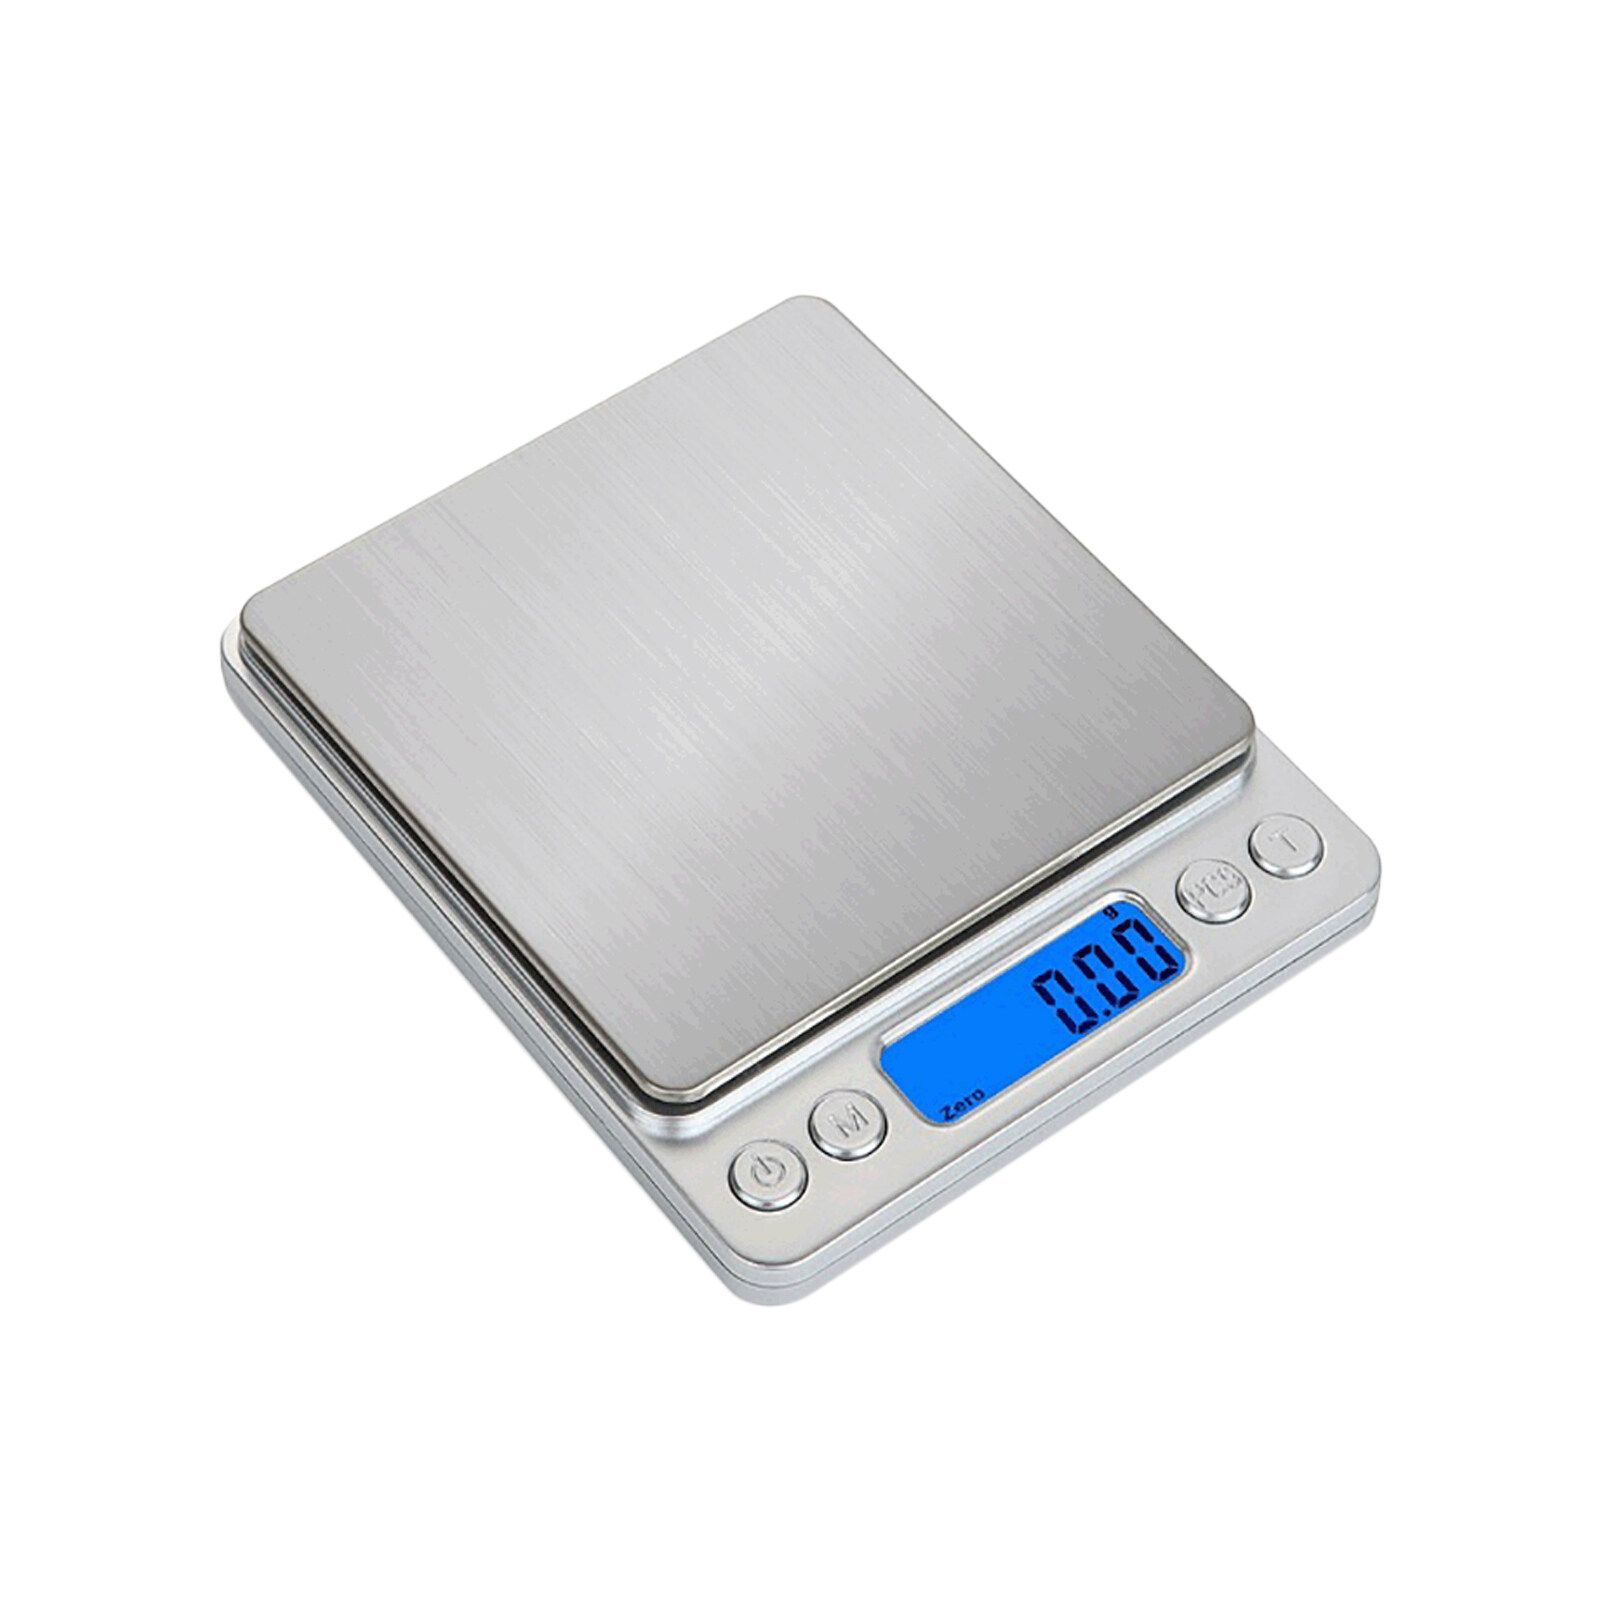 Весы с точностью 0.01. Digital Scale весы 500г. Superior Mini Digital platform Scale i-2000. Электронные весы 0.1-500гр. Мини весы электронные карманные 0.1-500 гр.